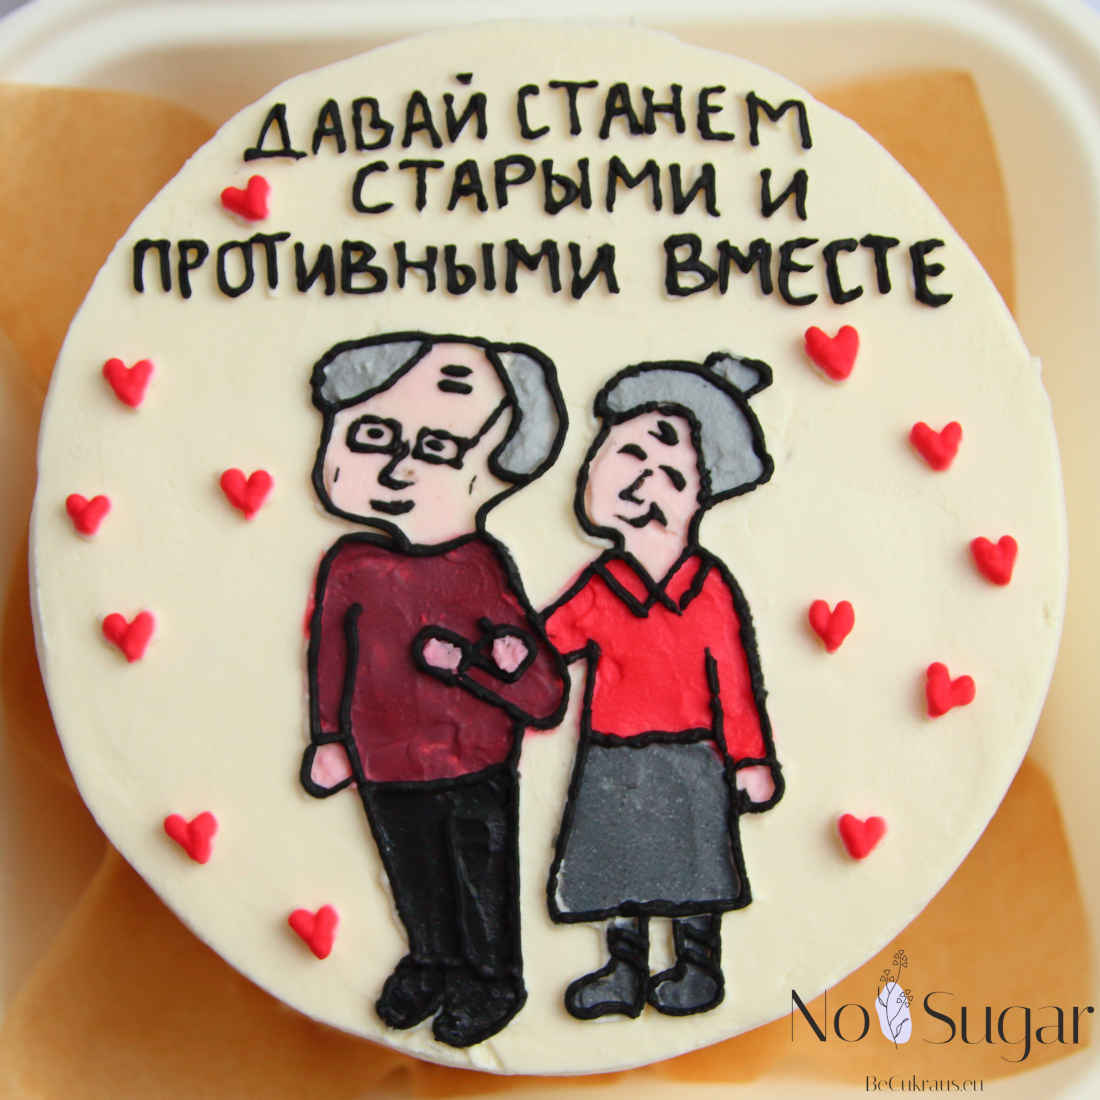 Пожилая пара на бенто-торте с надписью - Давай станем старыми и противными вместе